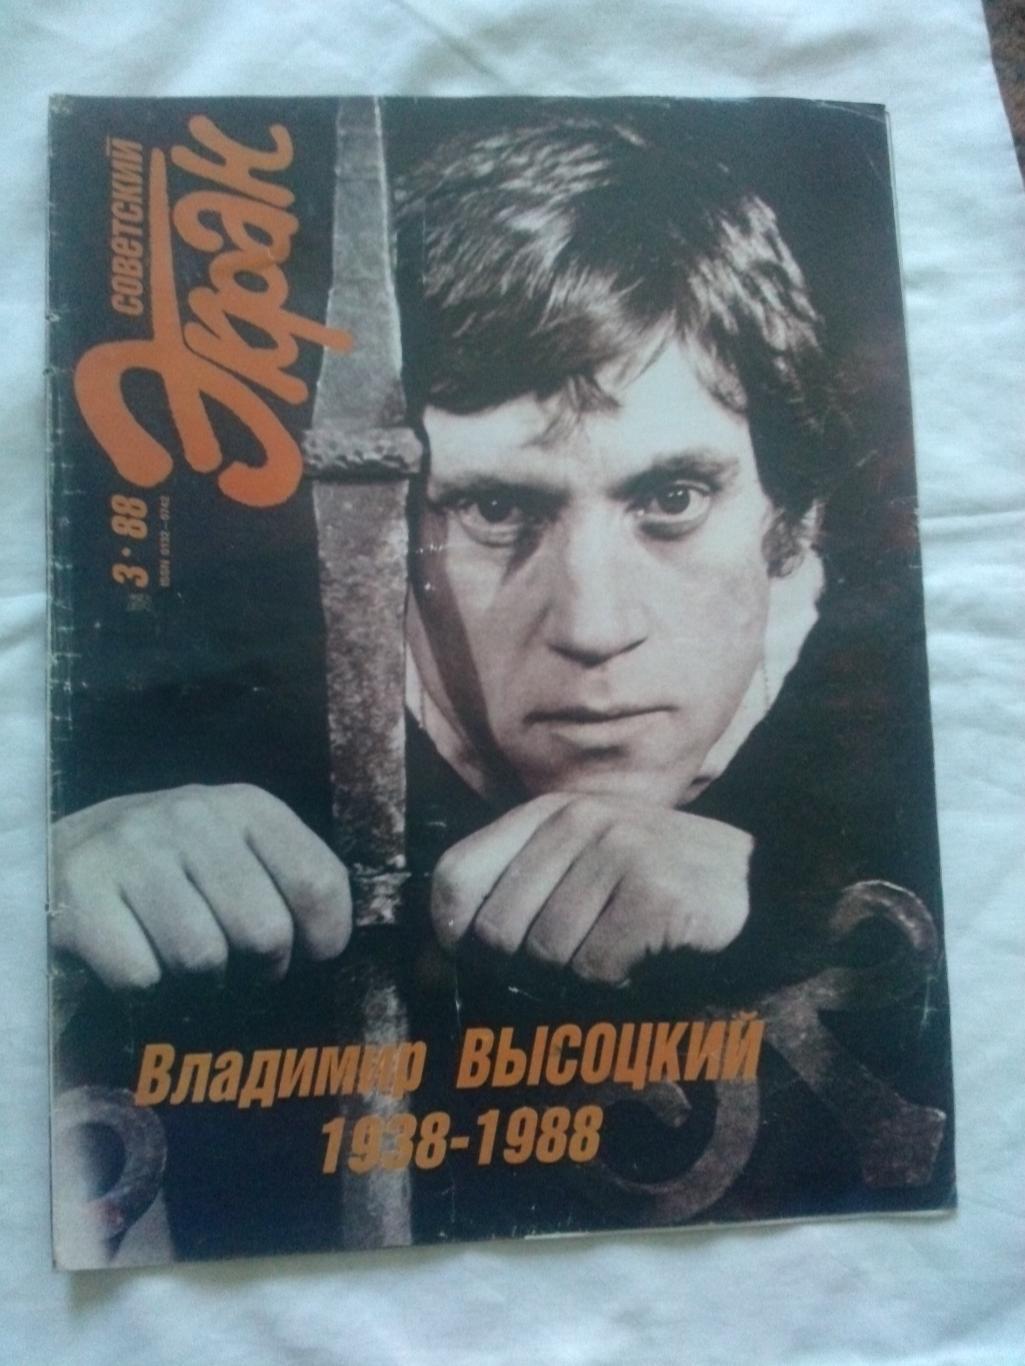 Журнал : Советский экран №3 (март) 1988 г. 50 - летию Владимира Высоцкого